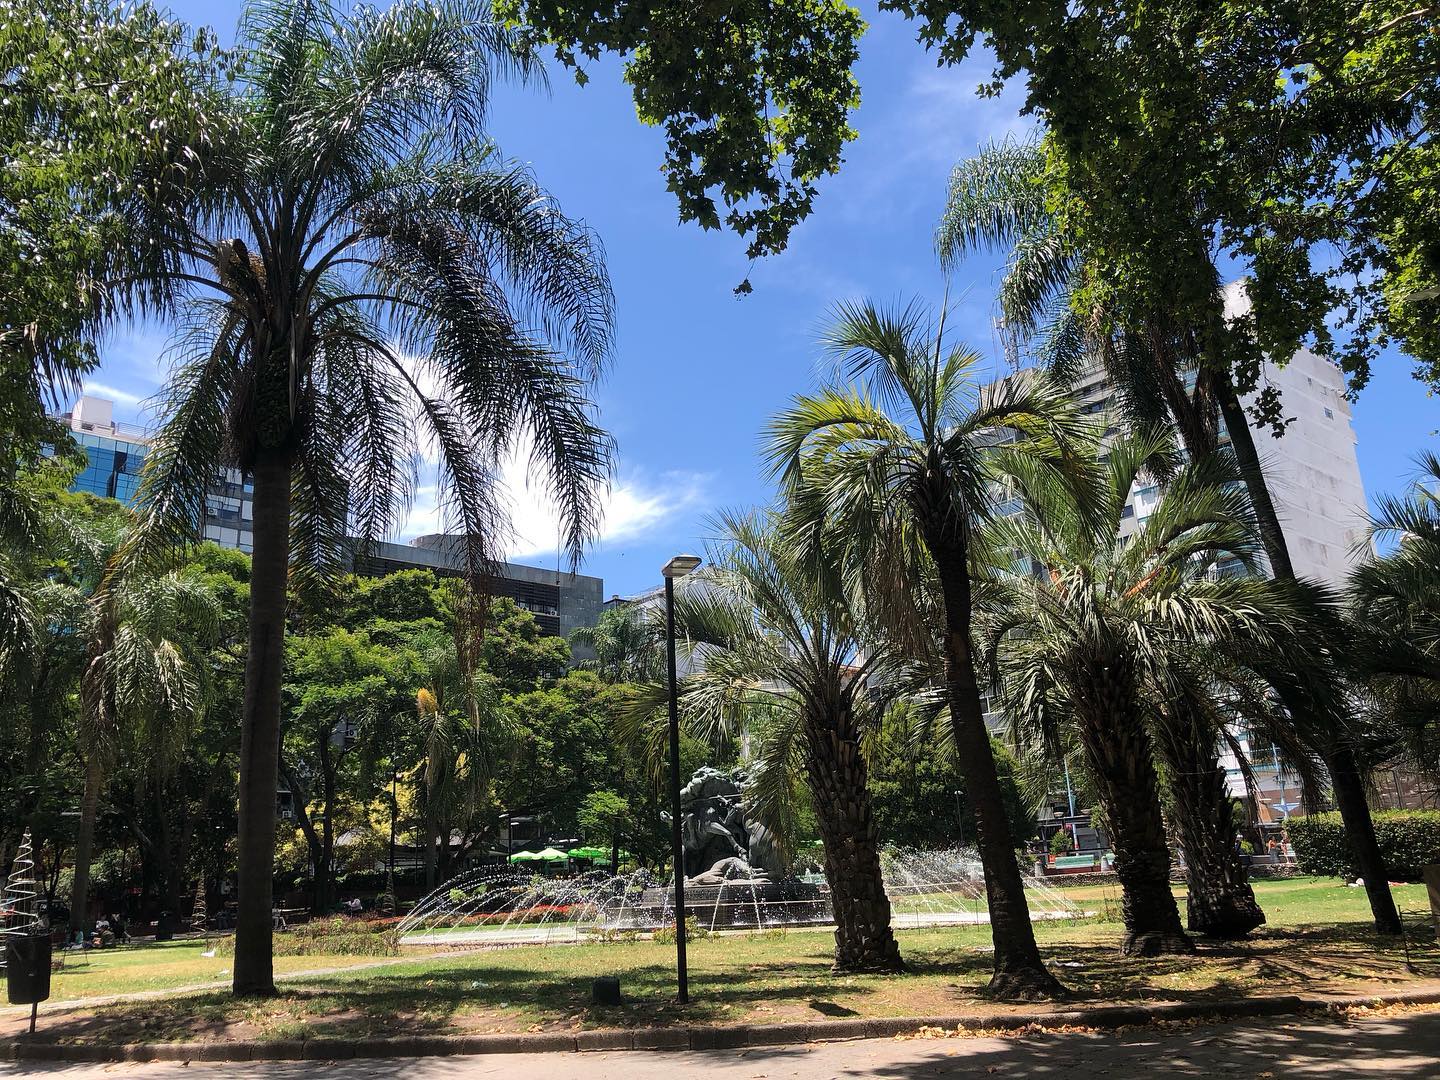 Und hier noch ein paar der so beliebten Palmen. #montevideo #uruguay #reisen #unterwegs #fun #palmen #park #sonne #sun